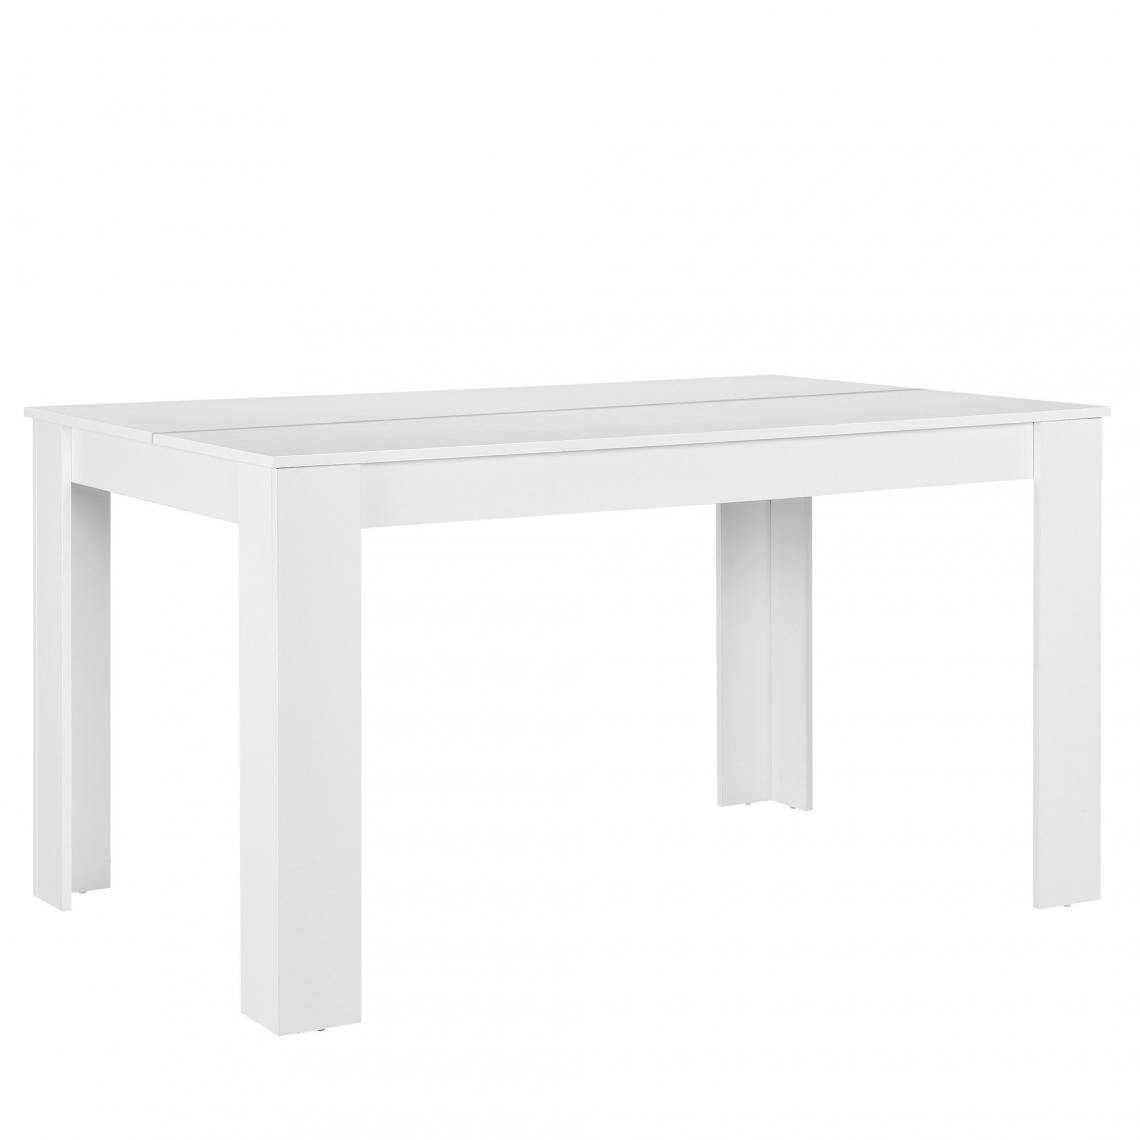 Helloshop26 - Table de salle à manger bureau robuste blanc 140 x 90 cm 03_0004253 - Tables à manger